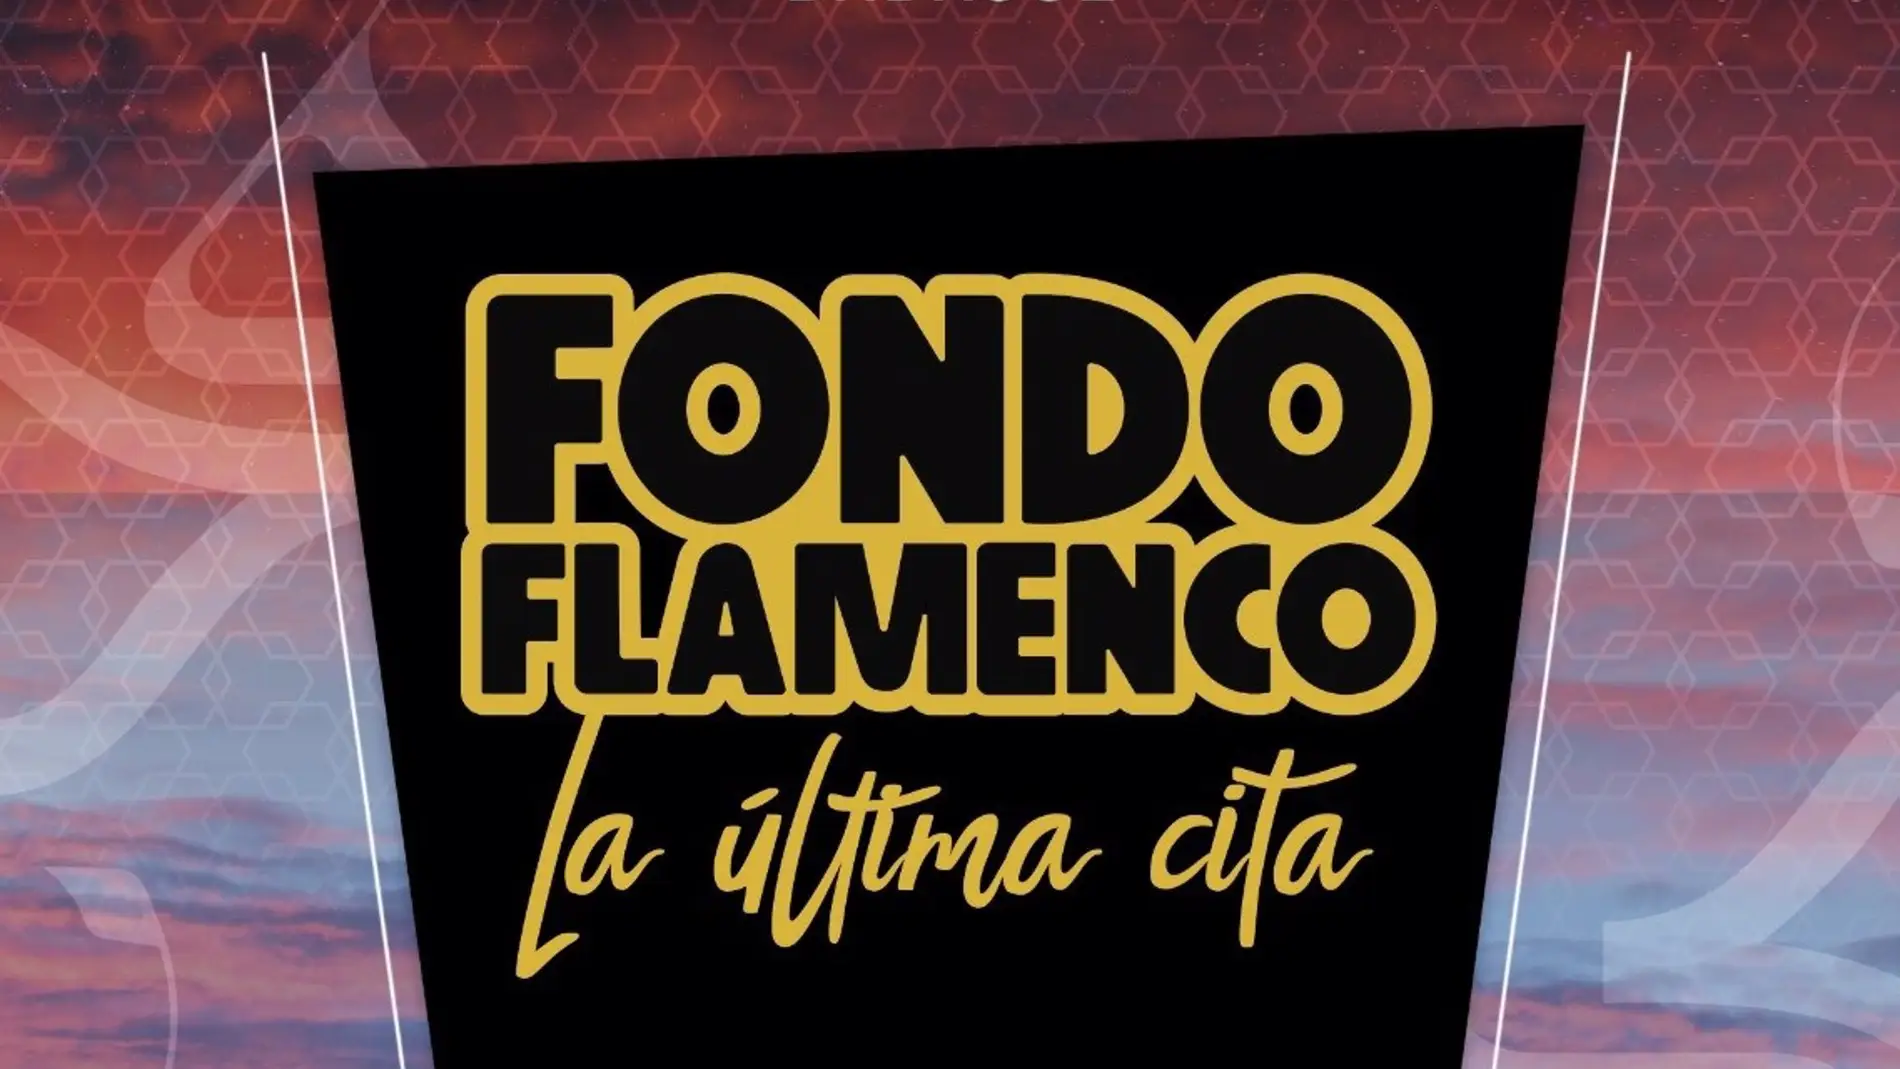 El trío sevillano Fondo Flamenco actuará el 23 de julio en el Alcazaba Festival de Badajoz